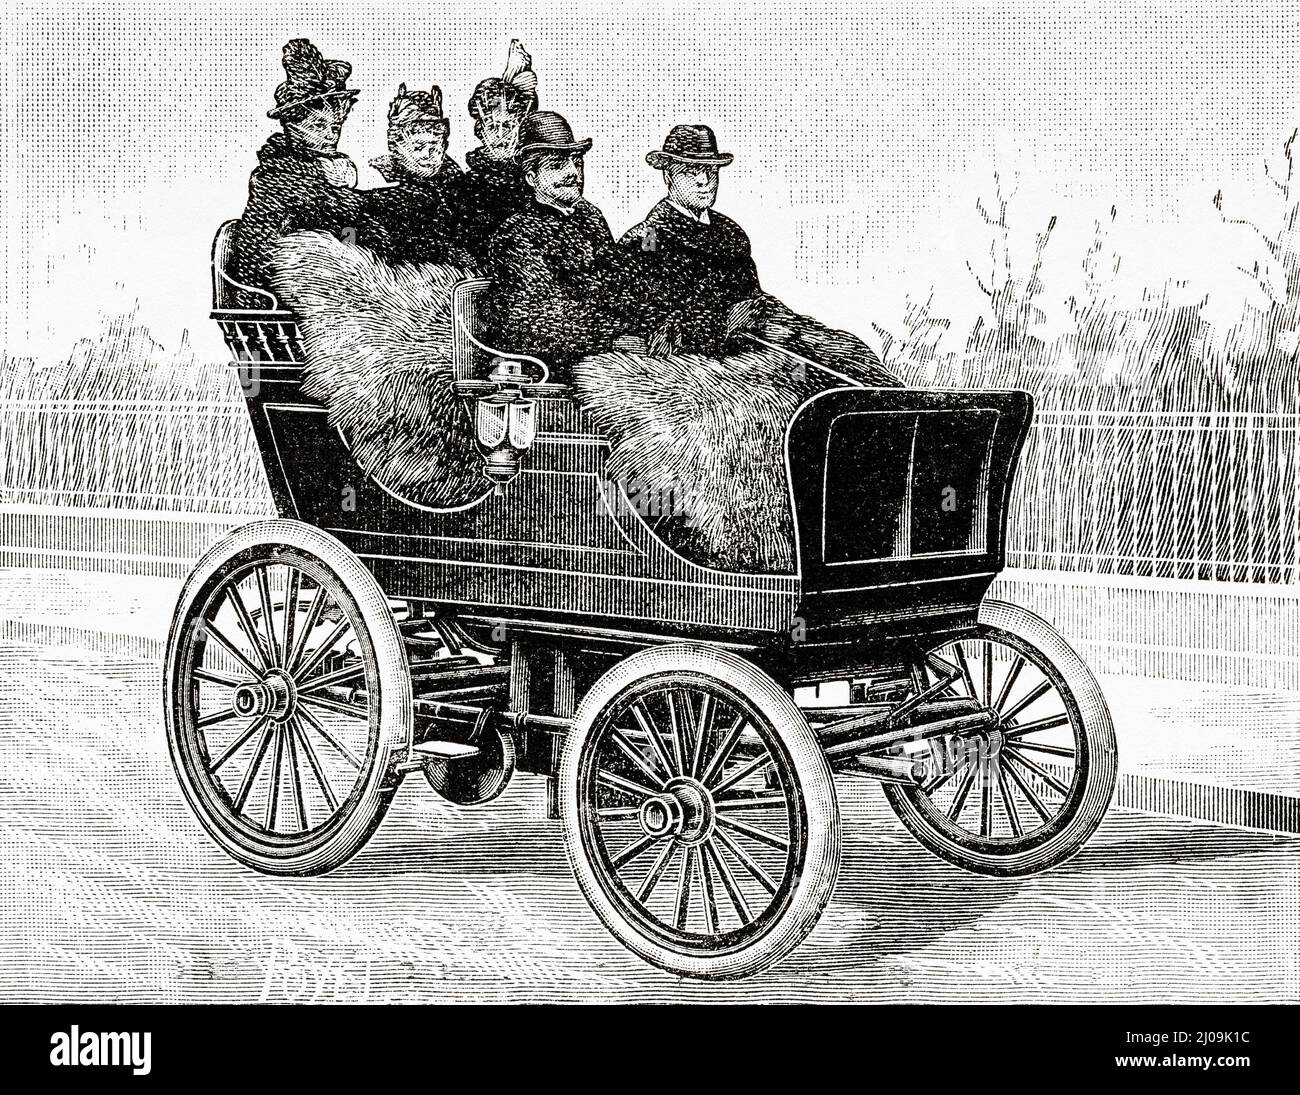 Une voiture à air comprimé datant du 19th siècle. Ancienne illustration gravée du 19th siècle de la nature 1899 Banque D'Images